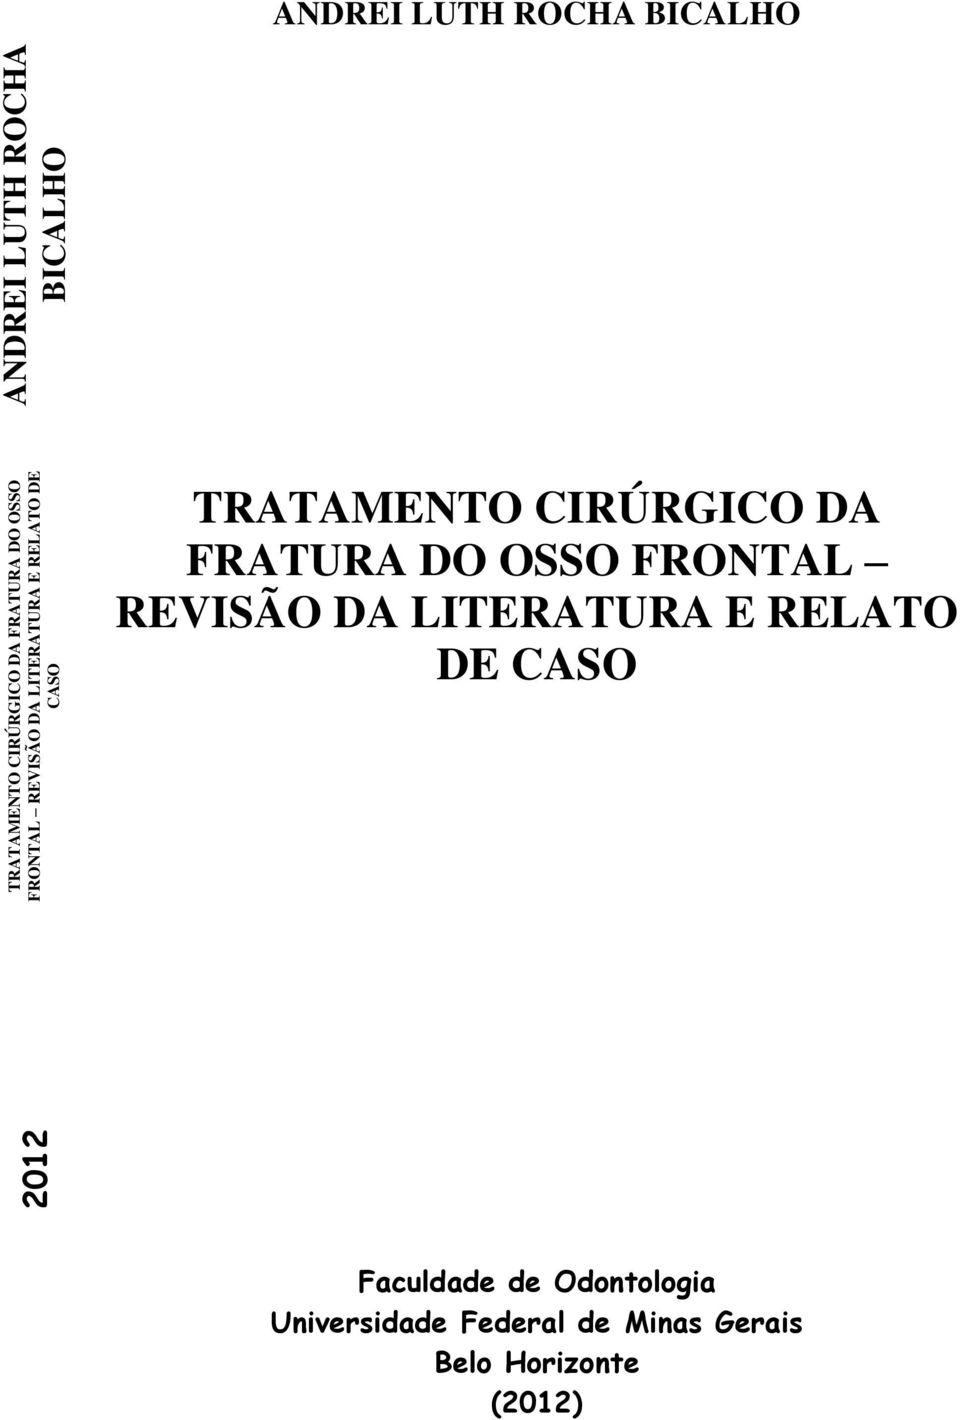 CIRÚRGICO DA FRATURA DO OSSO FRONTAL REVISÃO DA LITERATURA E RELATO DE CASO